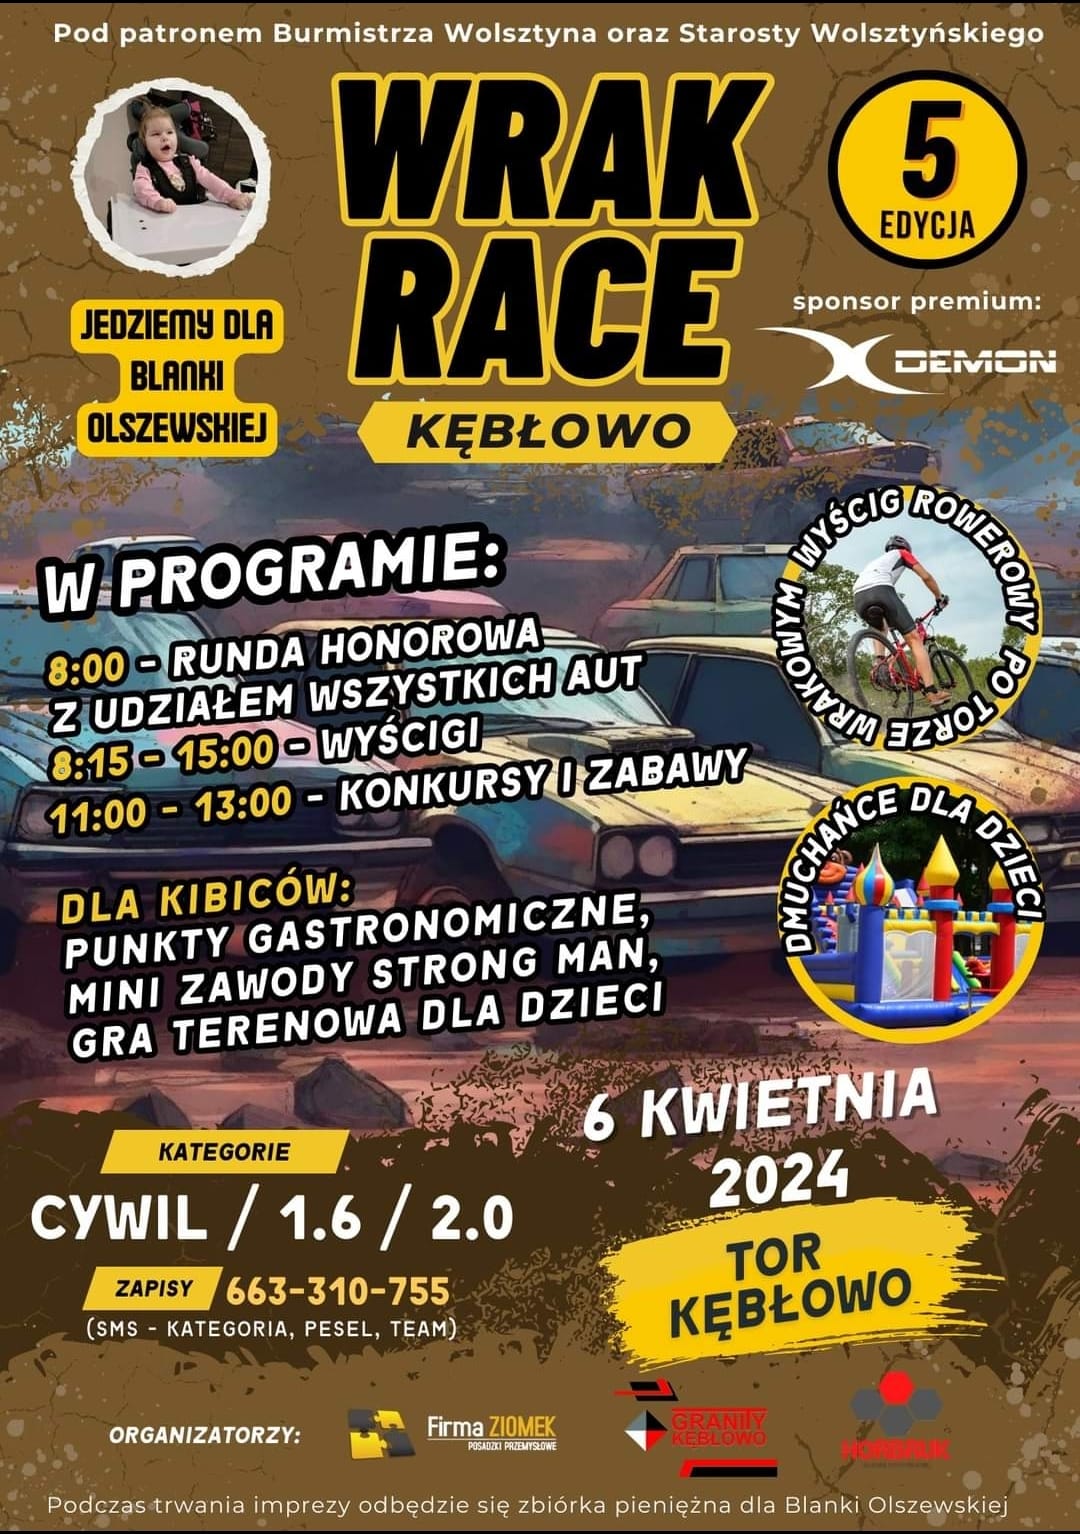 5 Edycja Wrak Race Kbowo